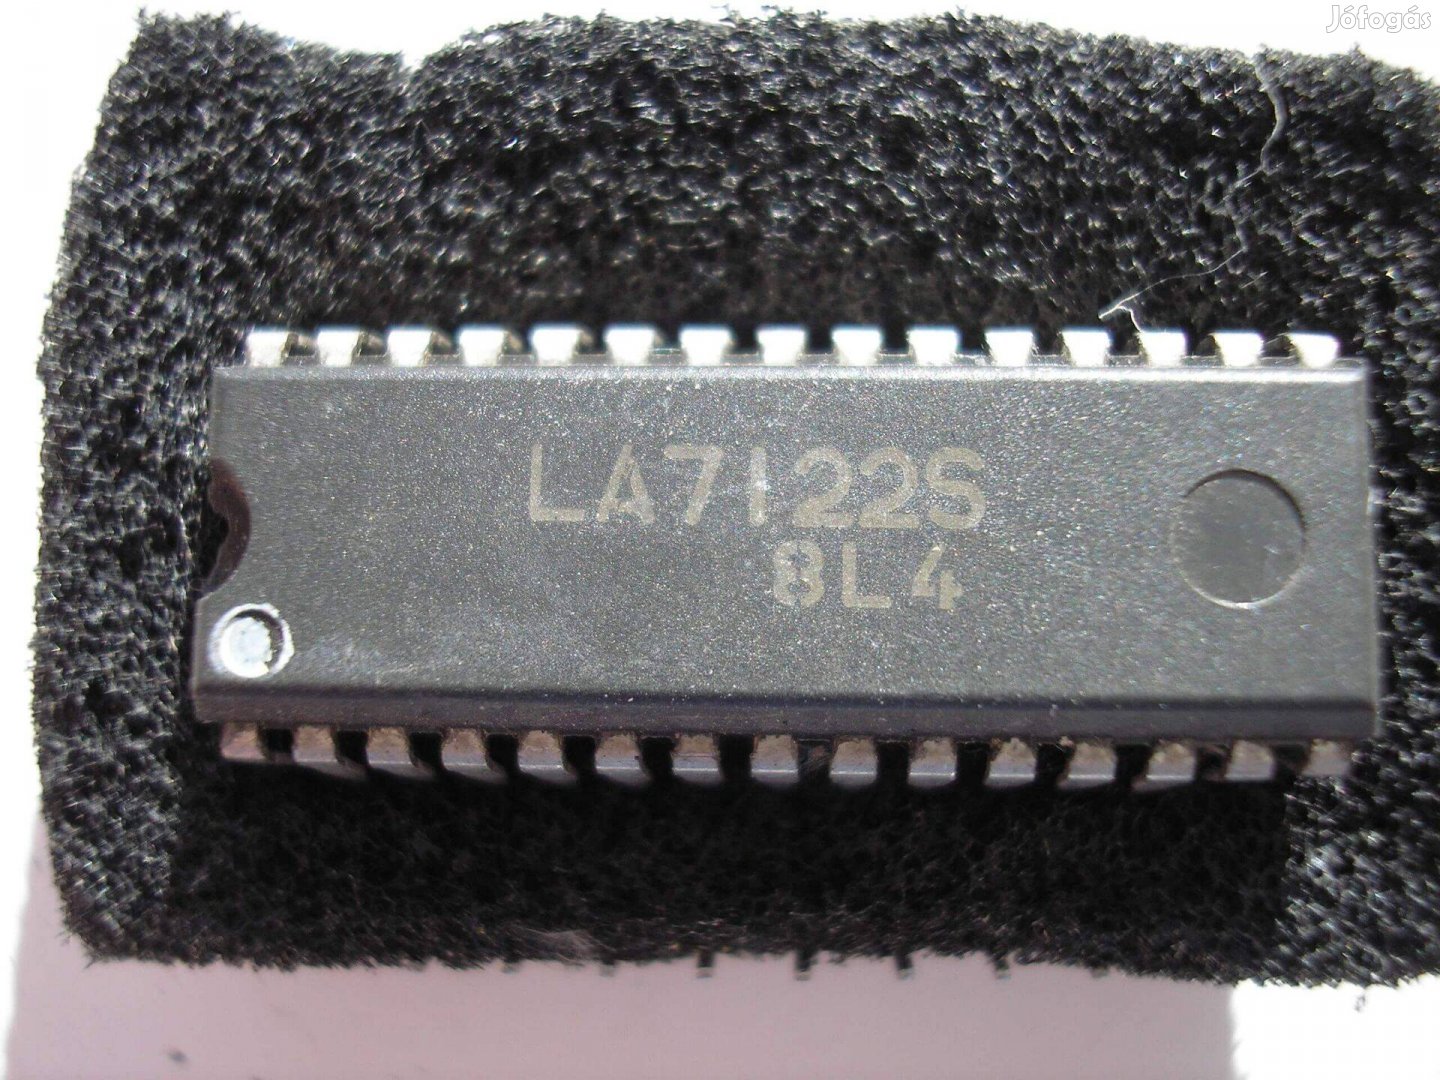 LA 7122 S - VCR servo interface IC , új